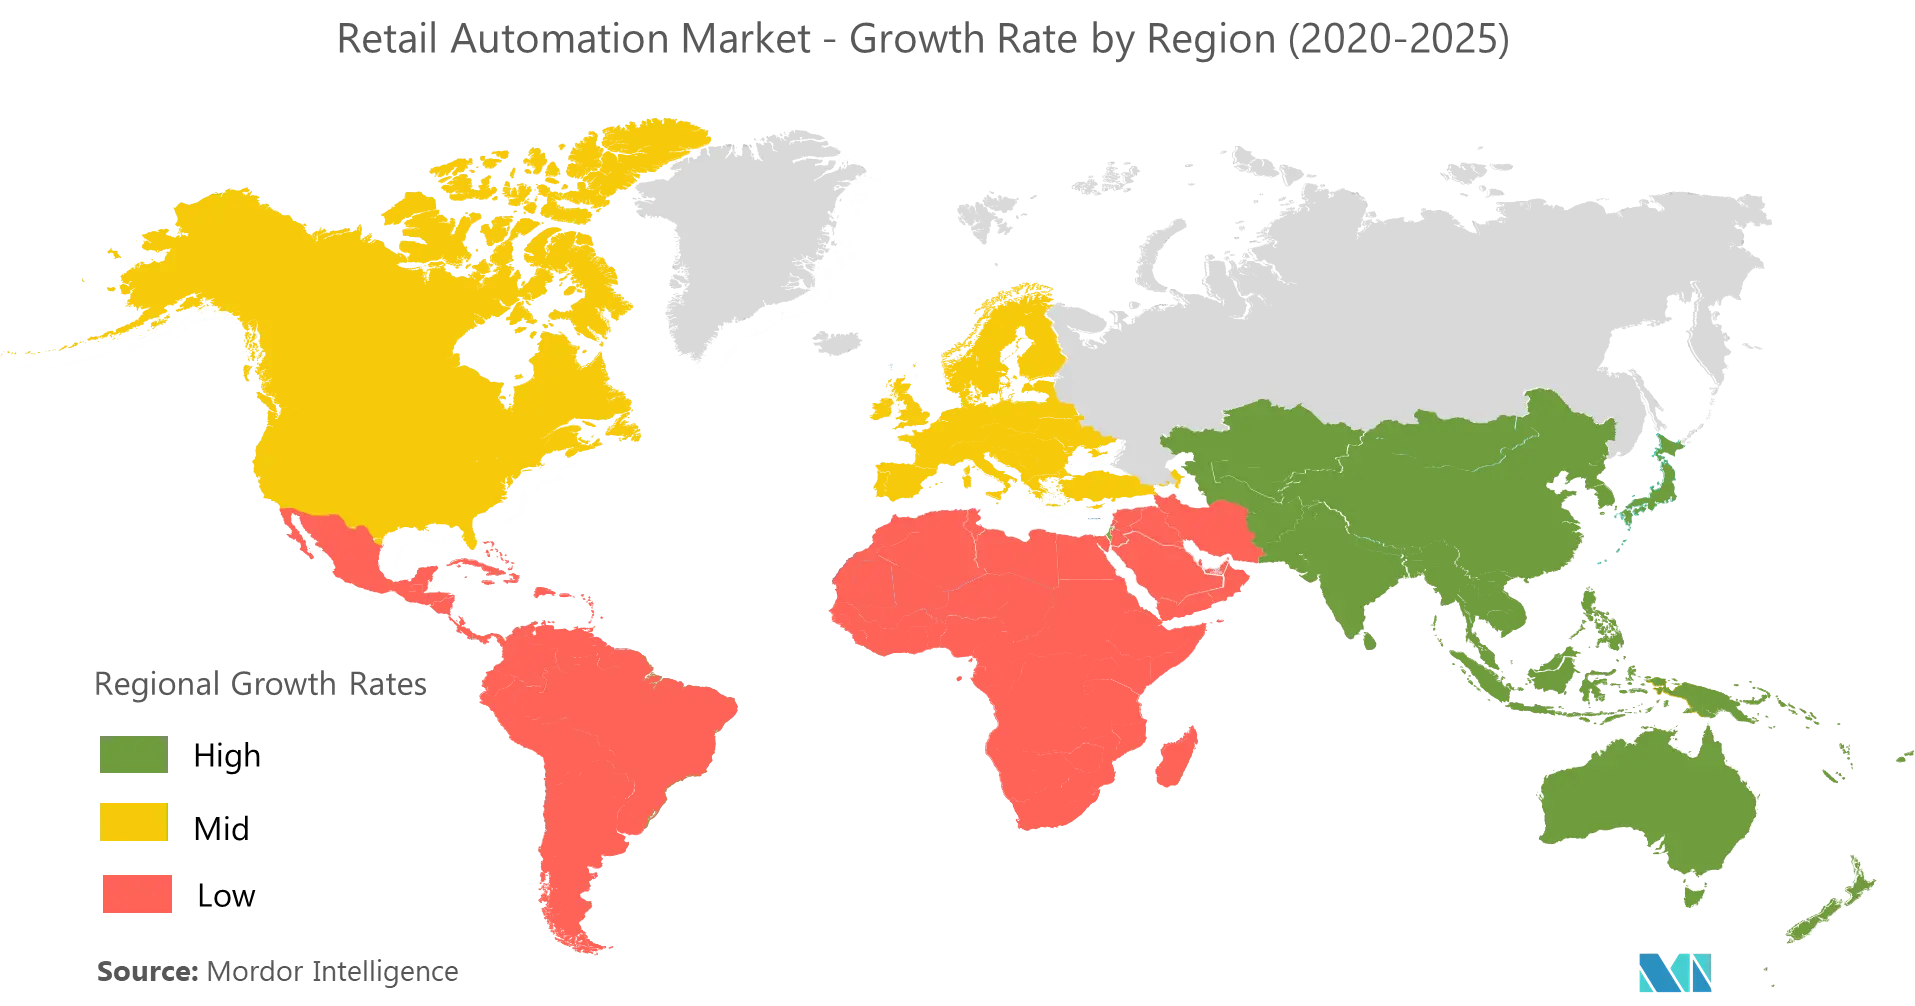 Marché de lautomatisation de la vente au détail - Taux de croissance par région (2020 - 2025)